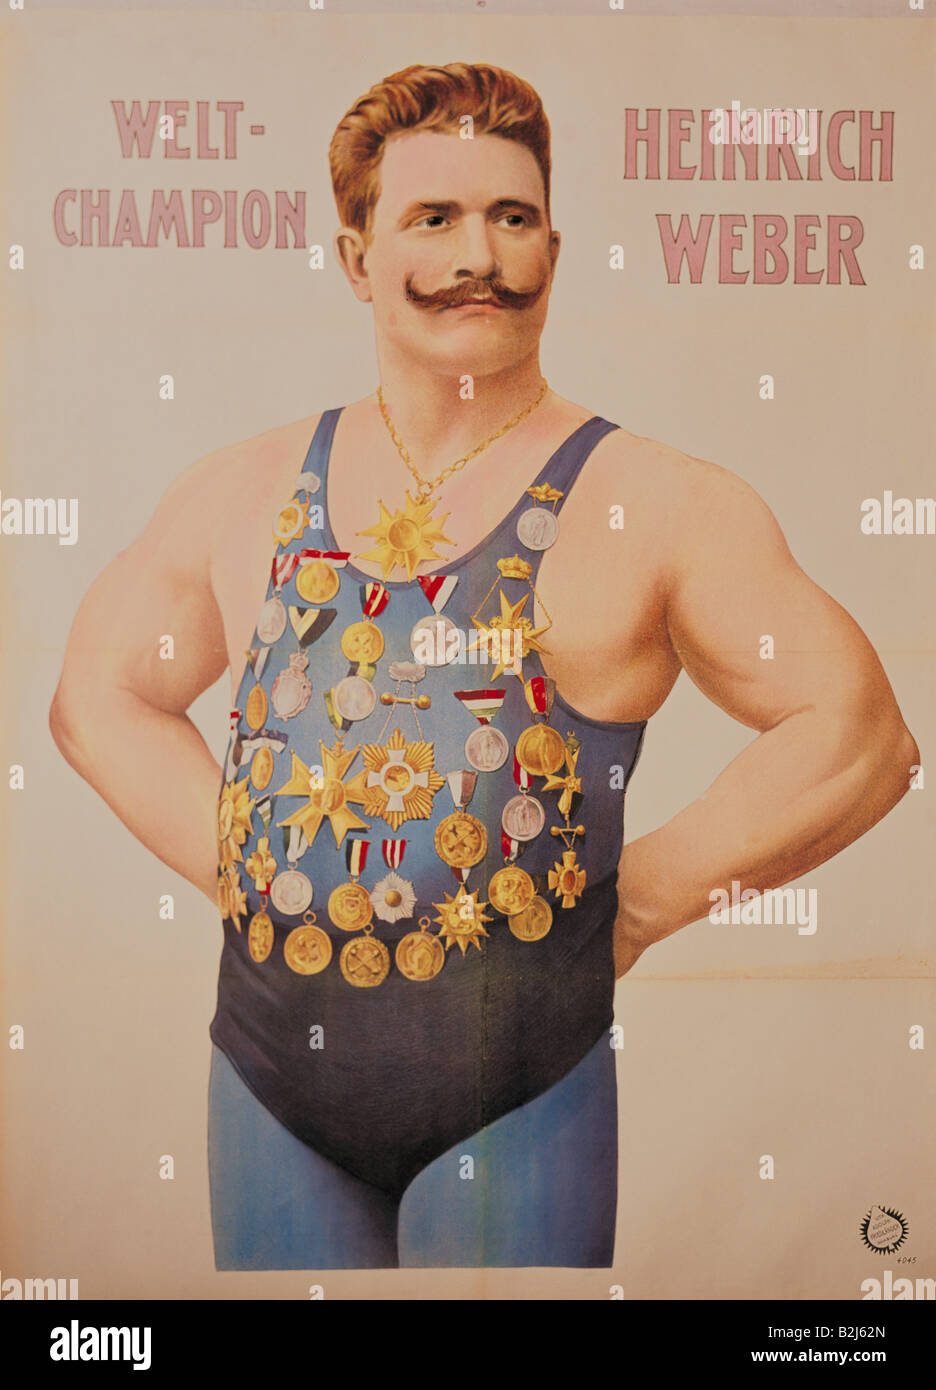 Weber, Heinrich, 2.5.1875 - 1958, German athlete (wrestler), half length, colour lithograph, poster, printed by Adolph Friedländer, Hamburg, 1900, Deutsches Plakat Museum, Essen, Stock Photo